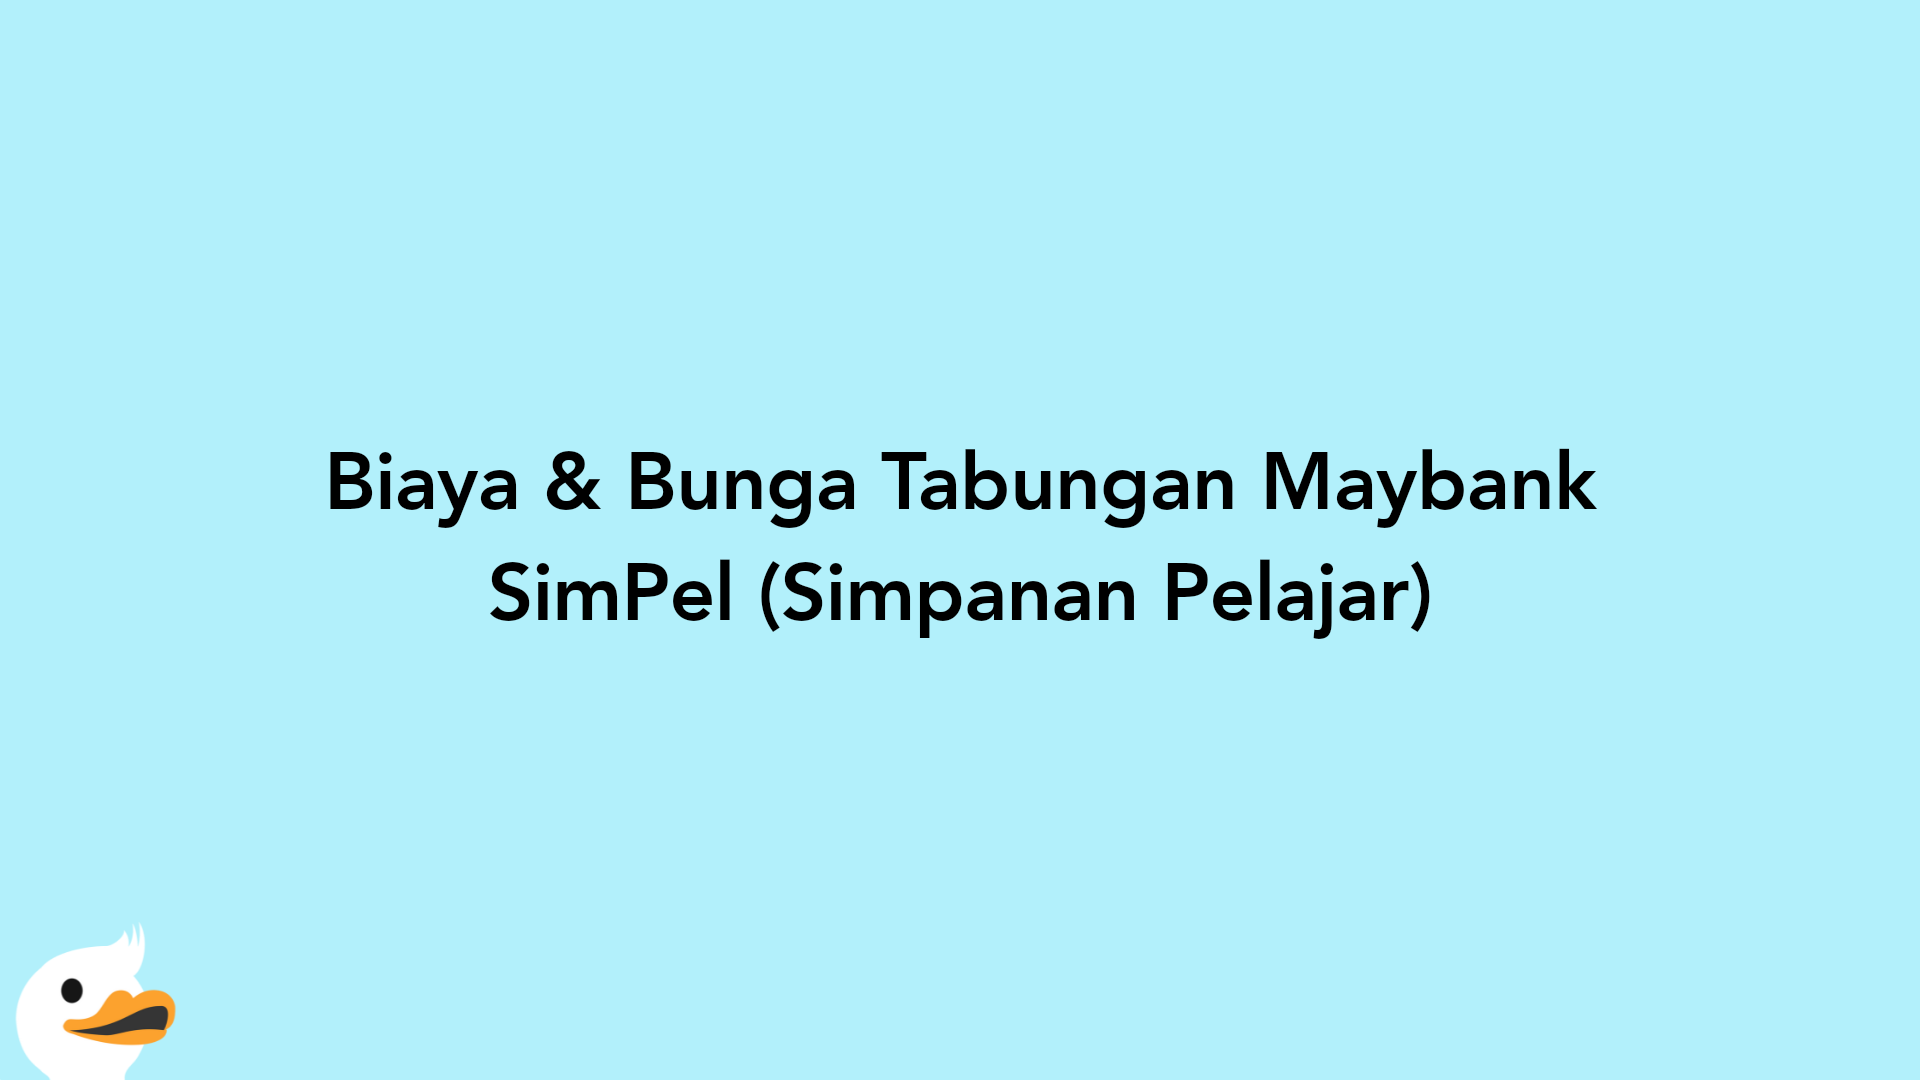 Biaya & Bunga Tabungan Maybank SimPel (Simpanan Pelajar)